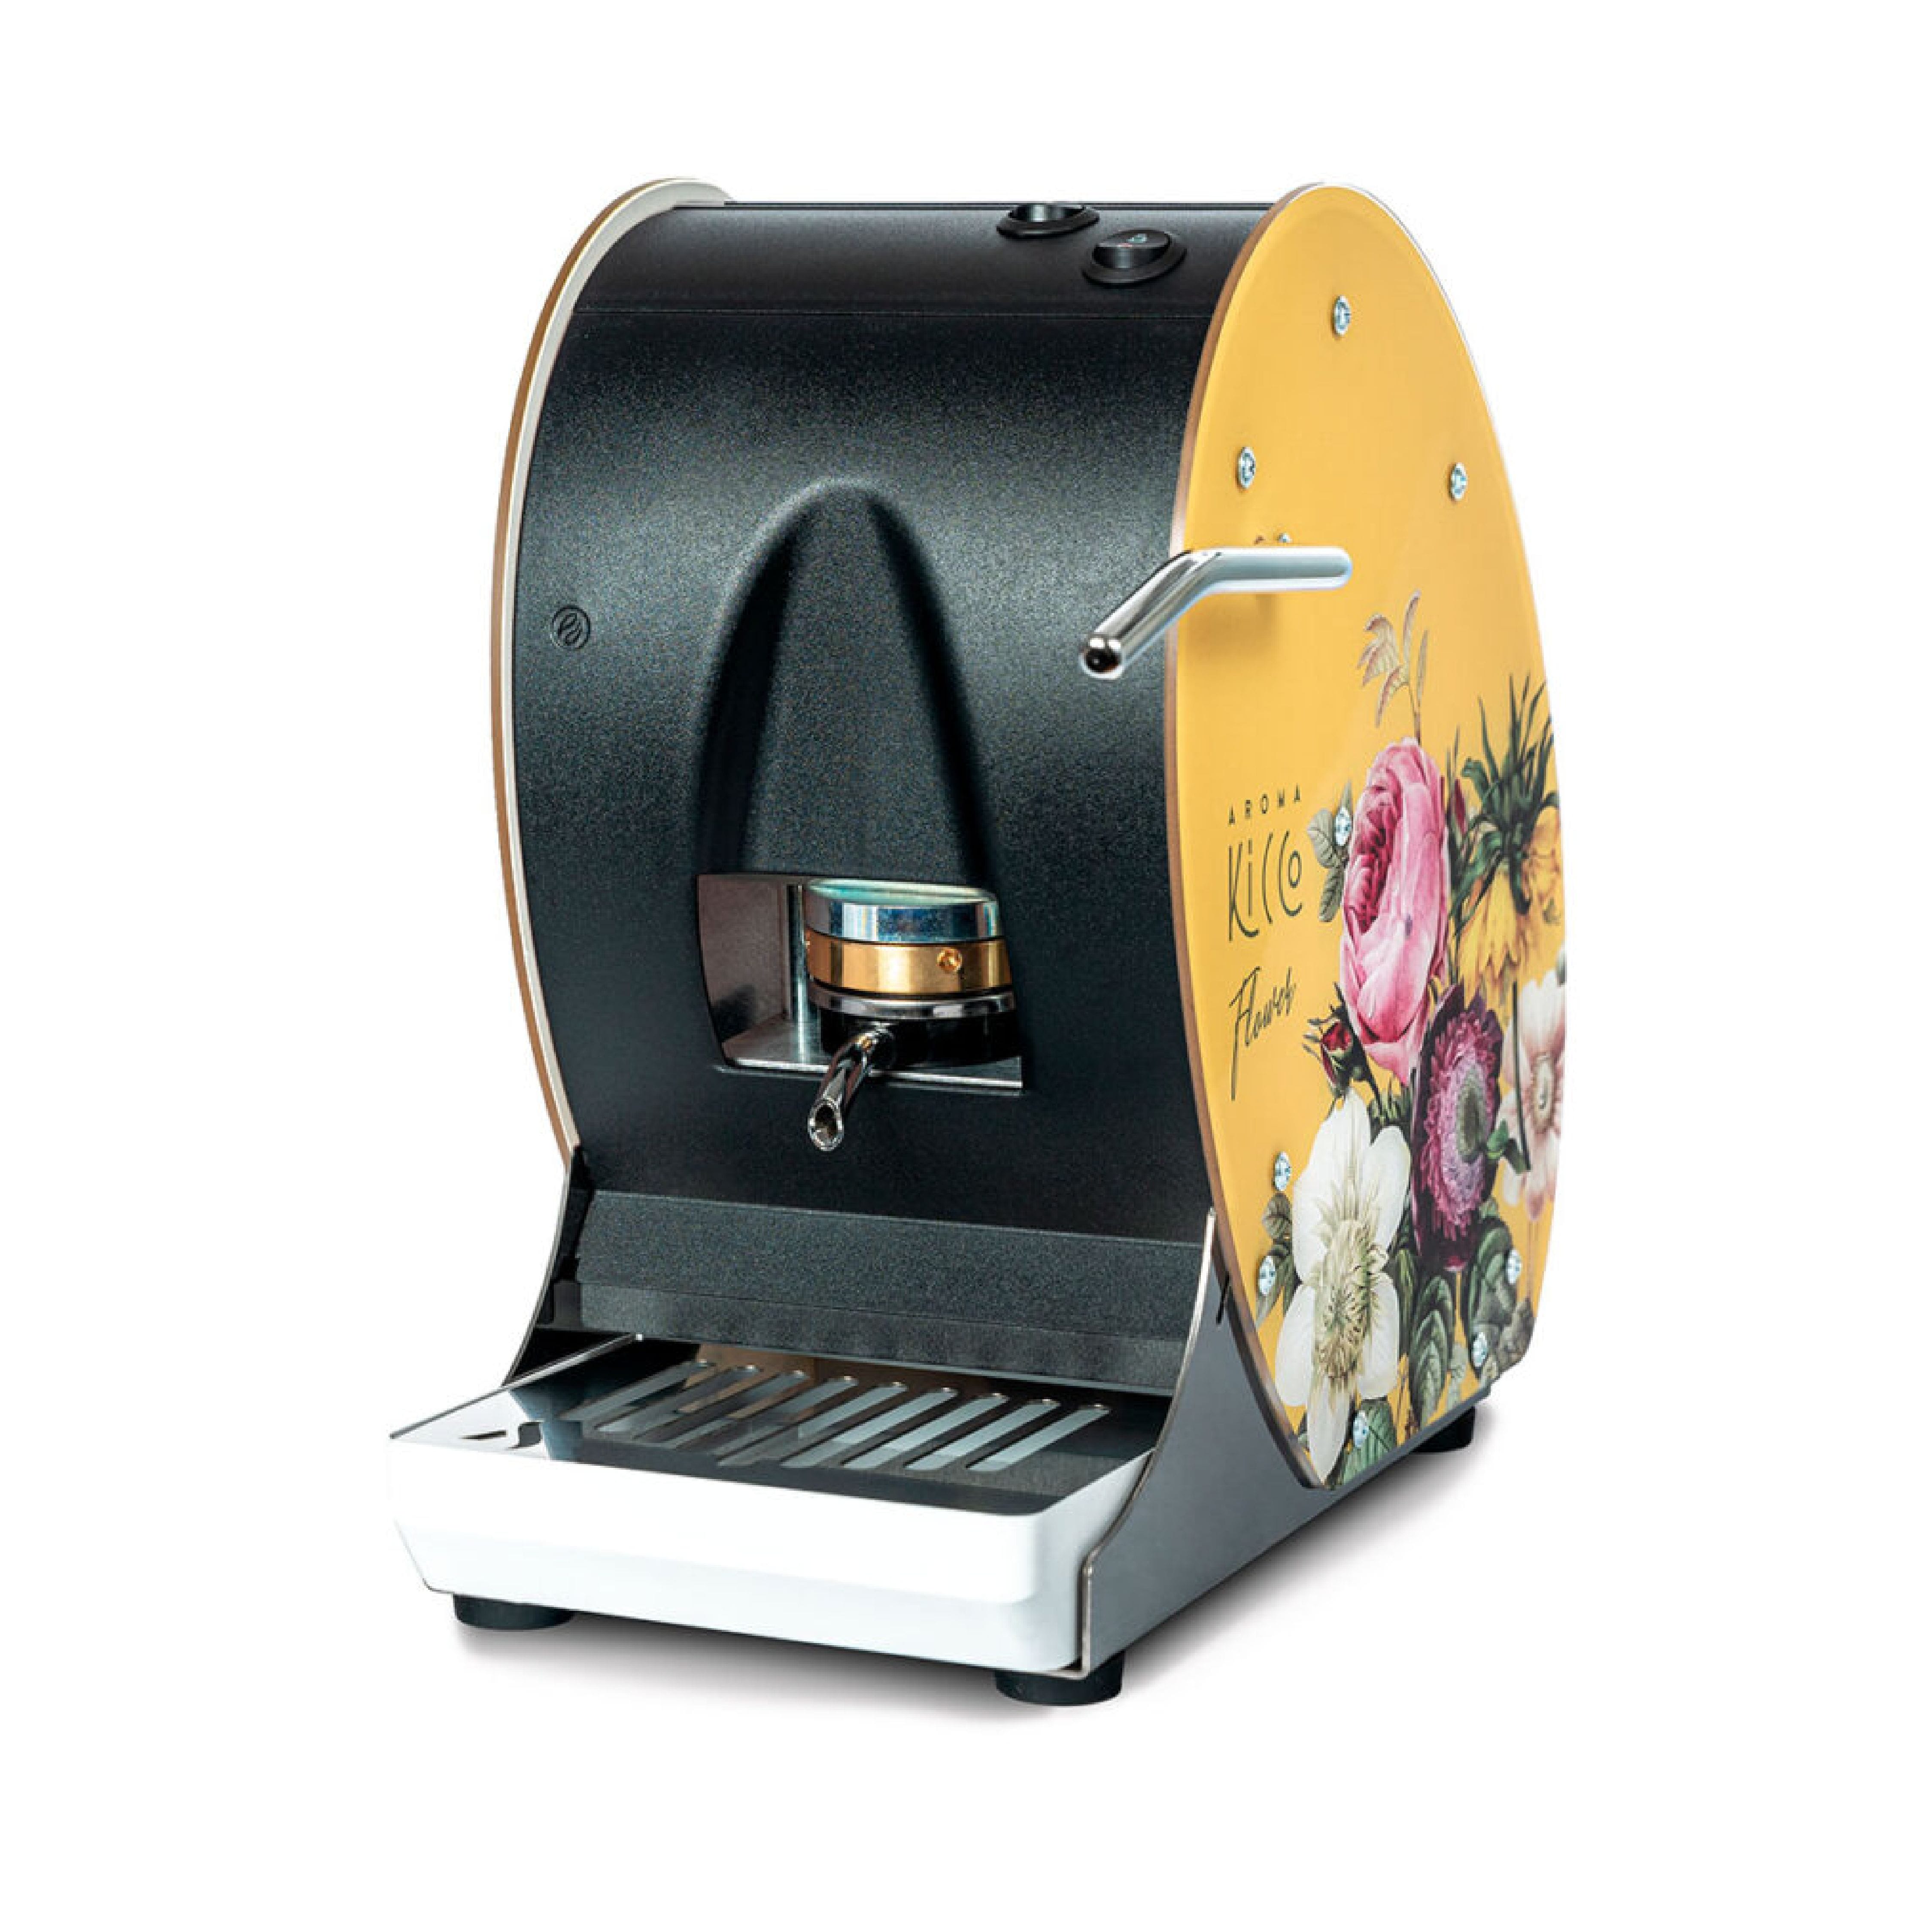 Macchina Caffe Mod. Kicco ABS Flower Giallo 01